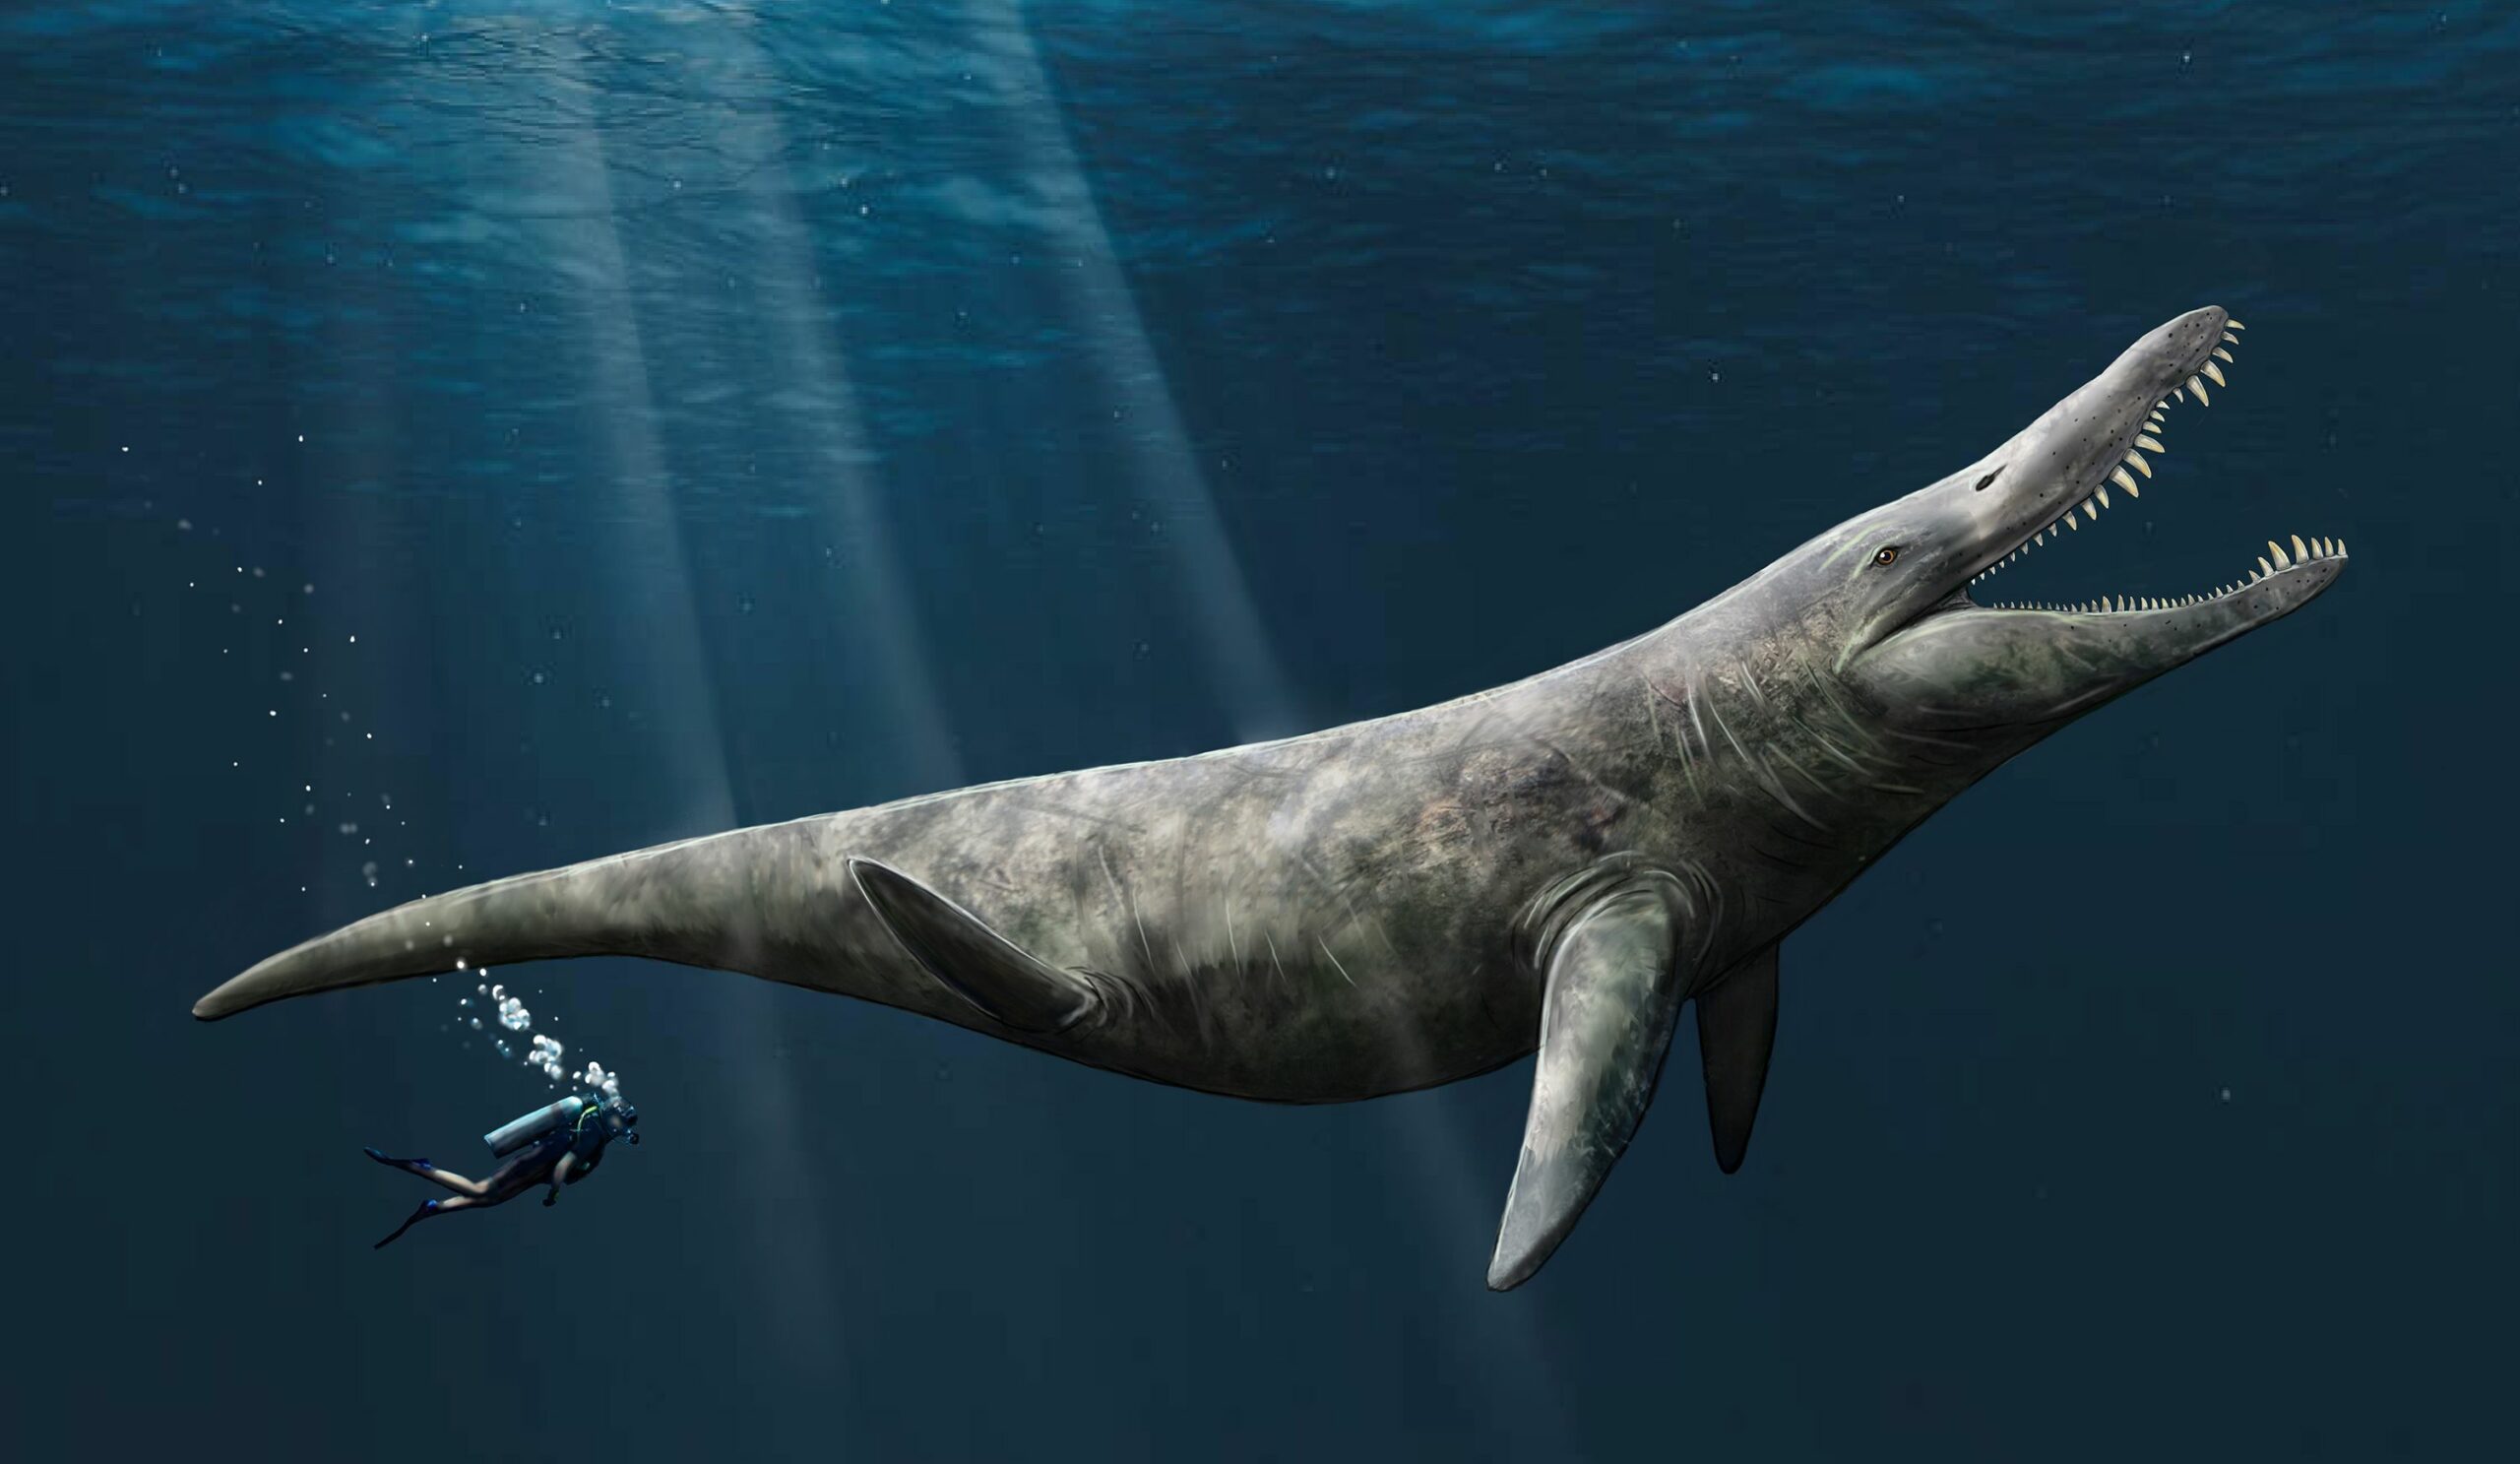 O impresie de artist despre pliozaur. Paleontologii de la Universitatea din Portsmouth au descoperit dovezi care sugerează că pliosaurii, strâns înrudiți cu Liopleurodon, ar fi putut atinge o lungime de până la 14.4 metri, de două ori mai mare decât o balenă ucigașă.